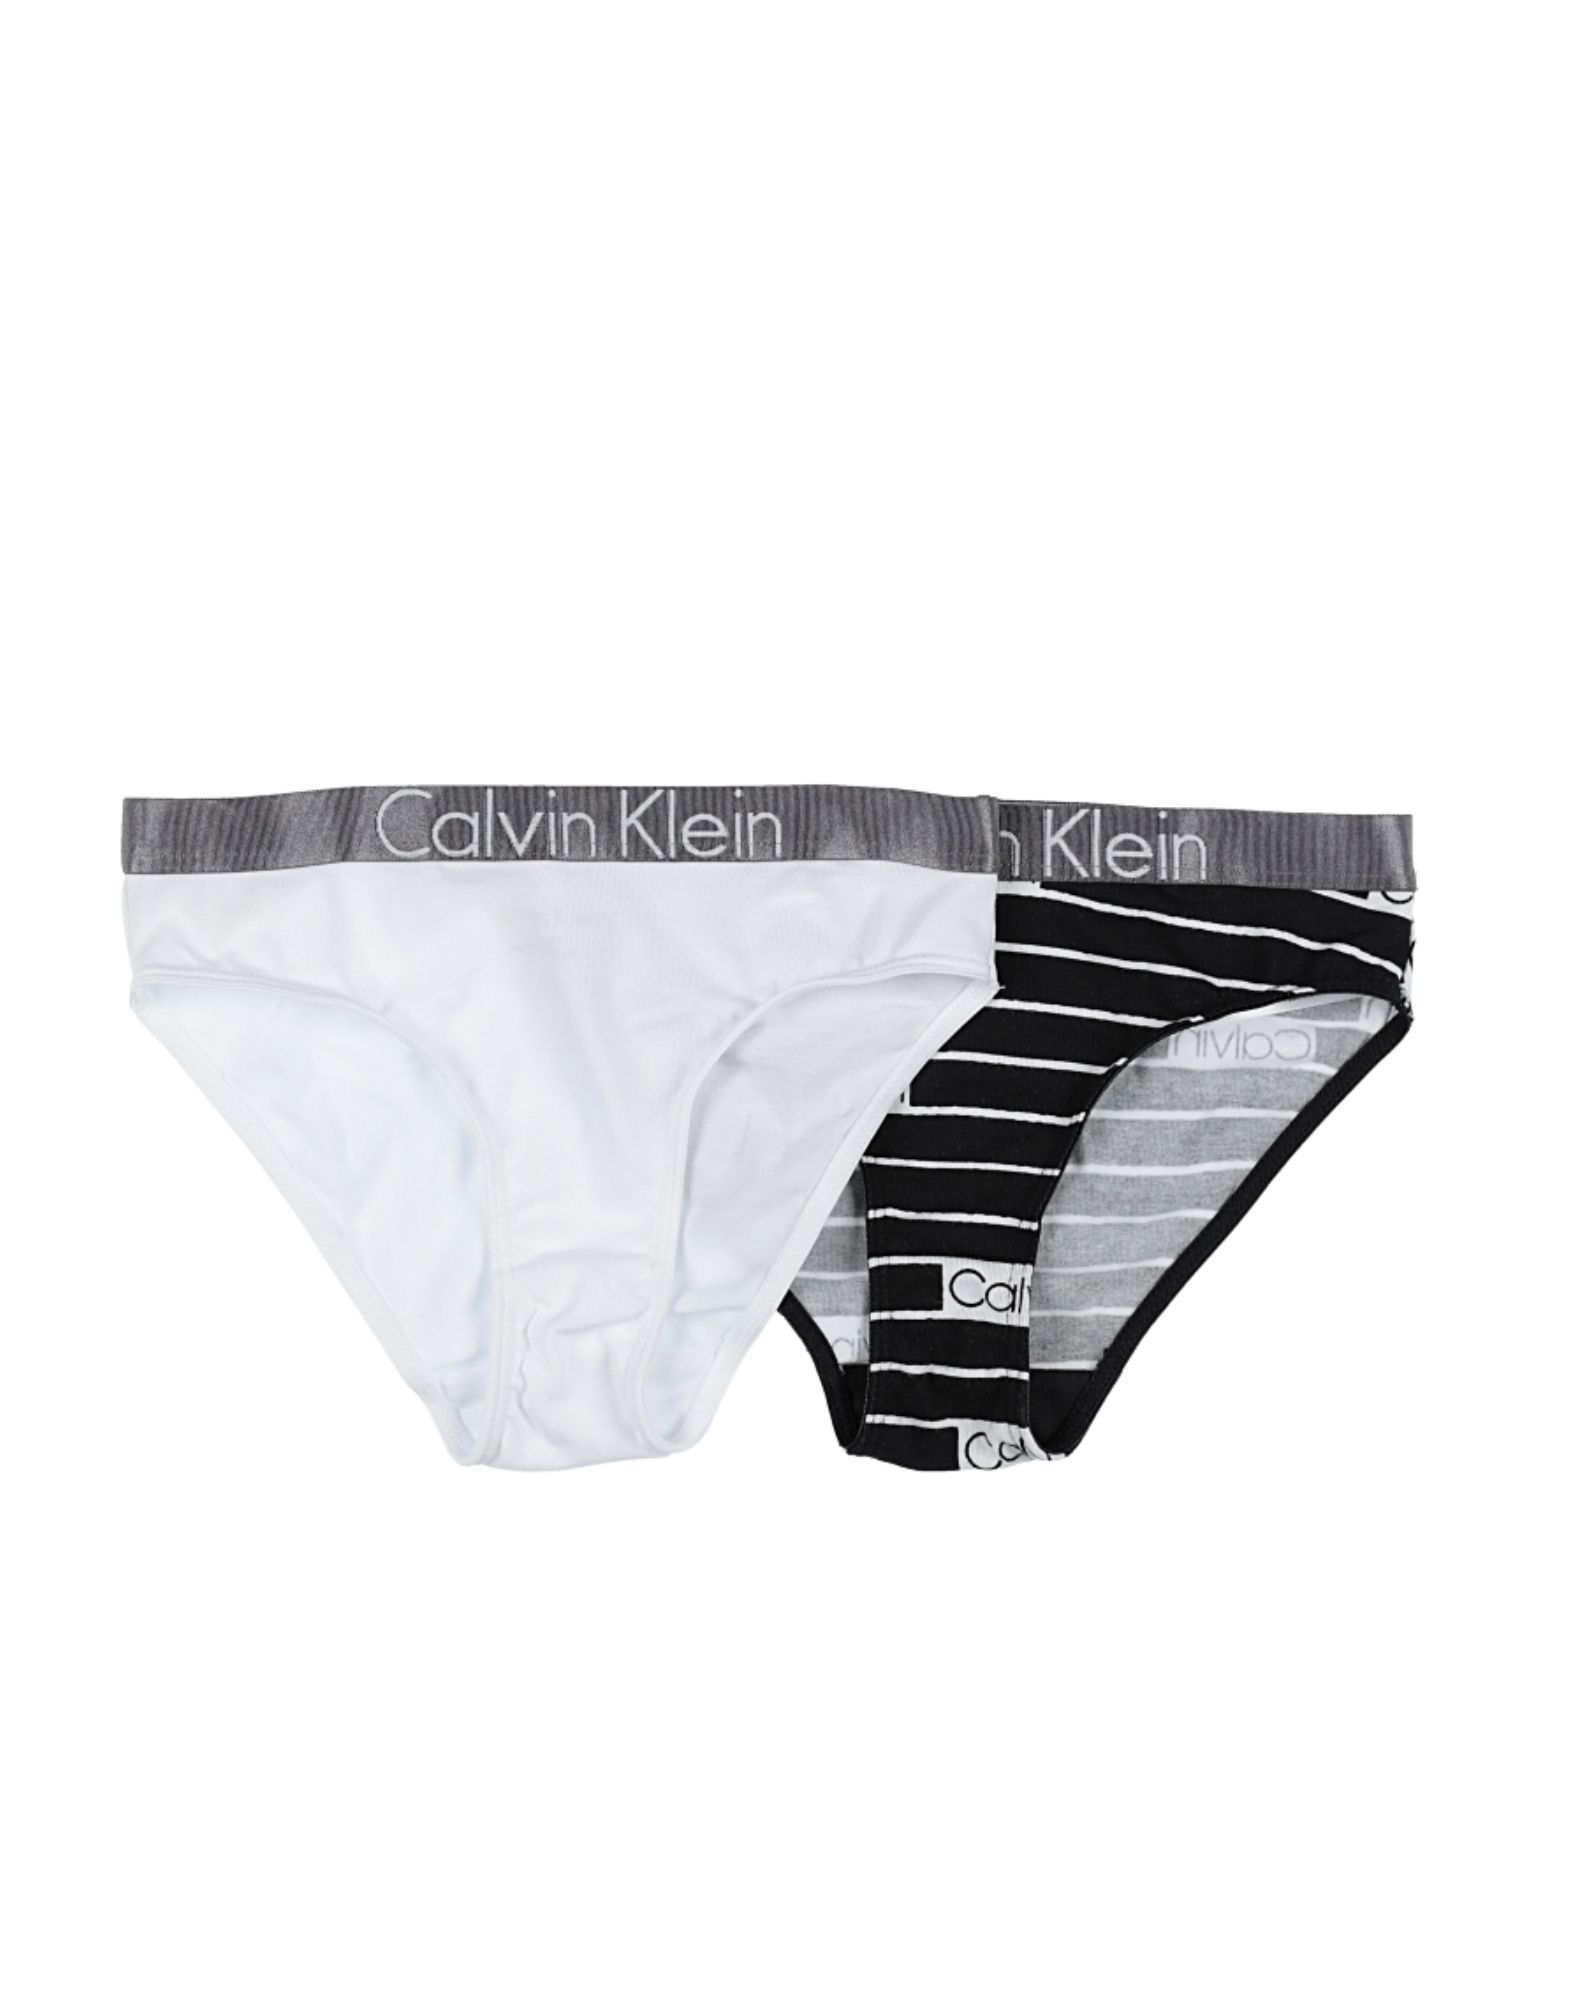 free calvin klein underwear